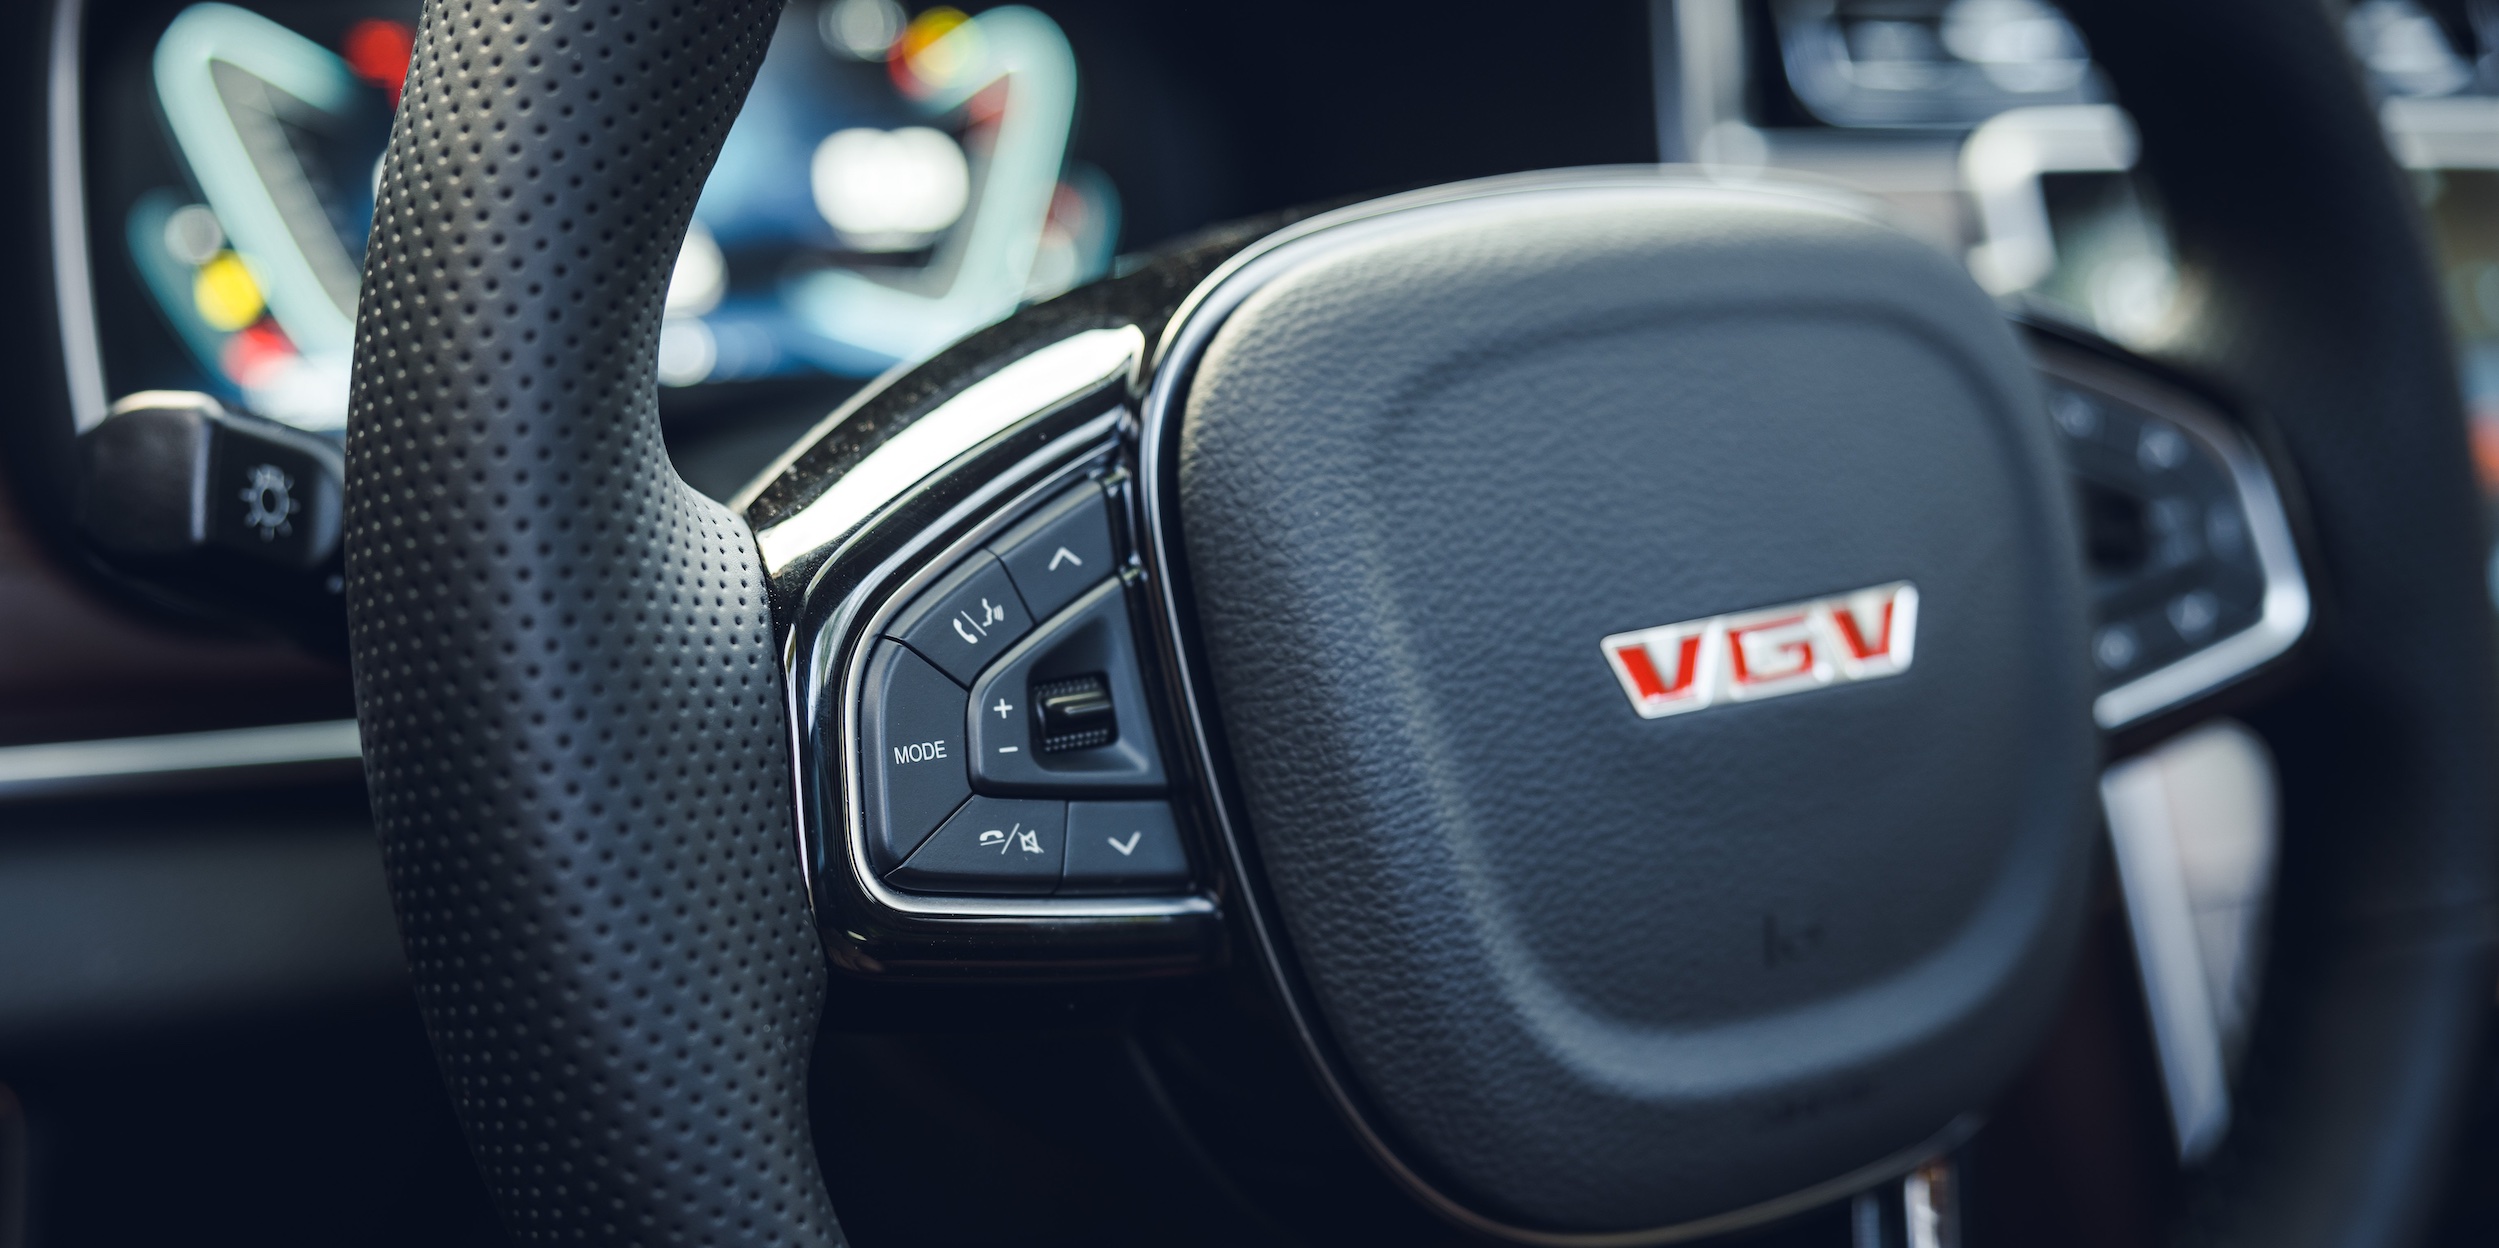 Автомобильный бренд VGV подписал партнёрское соглашение с Совкомбанком